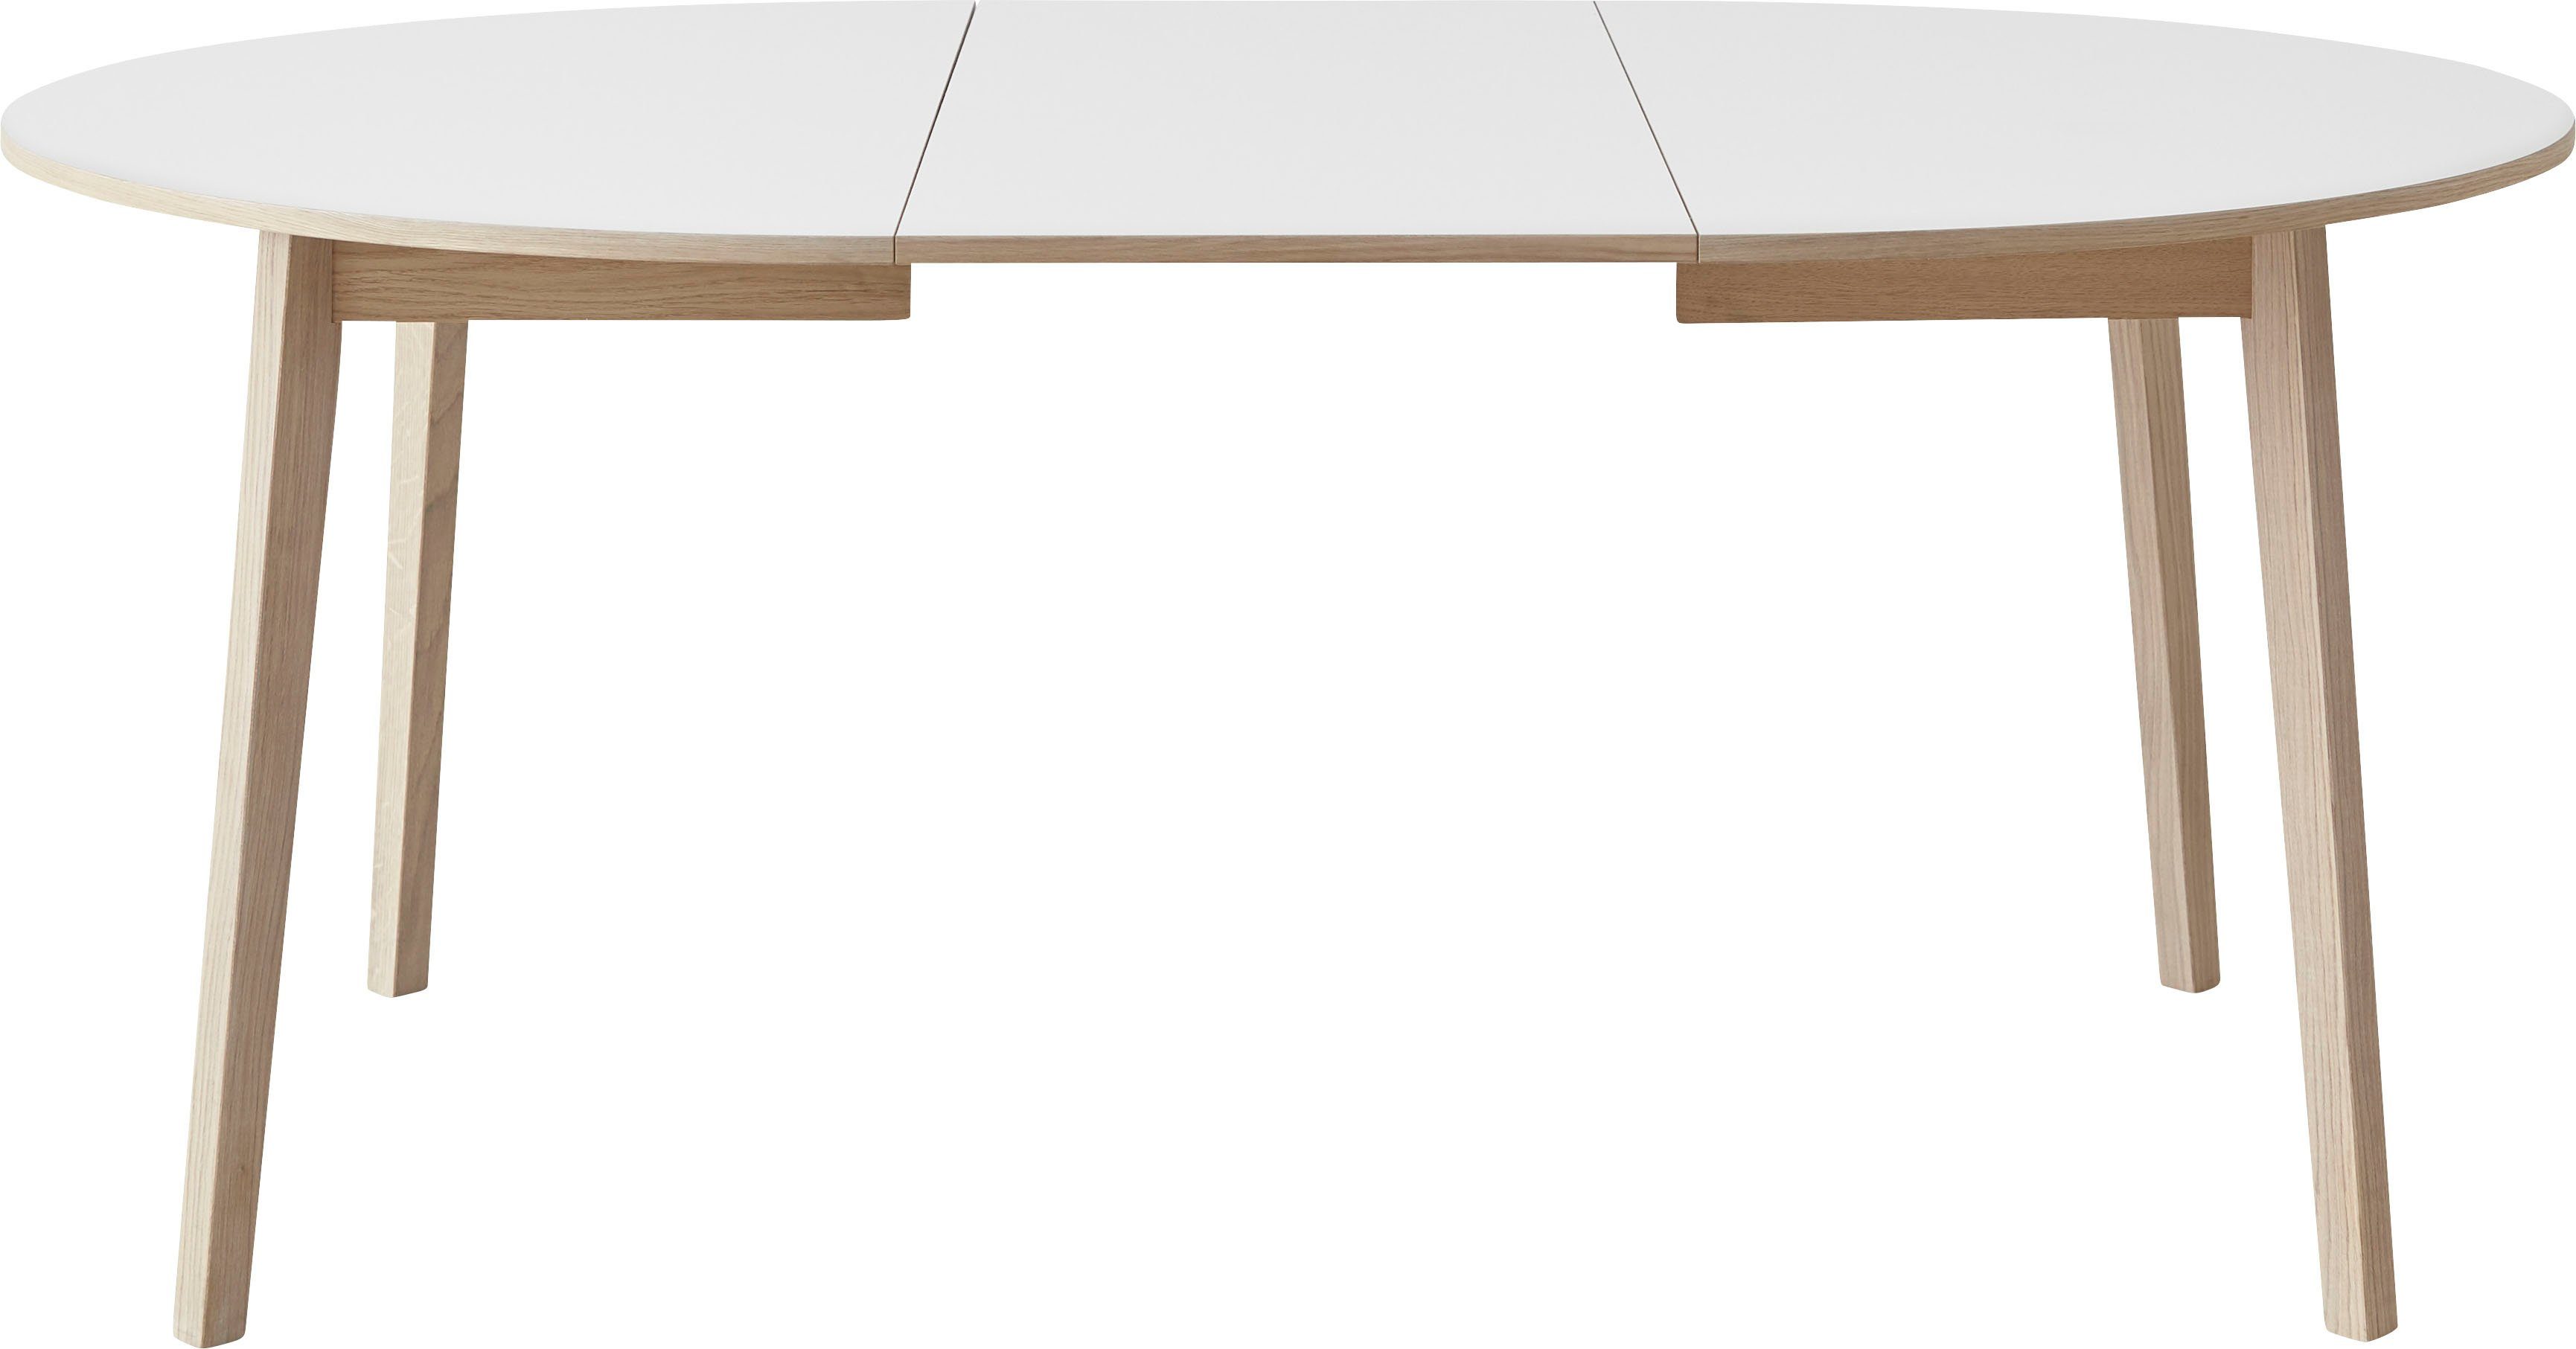 Hammel Furniture Esstisch by Basic cm, Weiß/Naturfarben 2 Hammel aus Massivholz, Ø130/228 Gestell inklusive Einlegeplatten Single